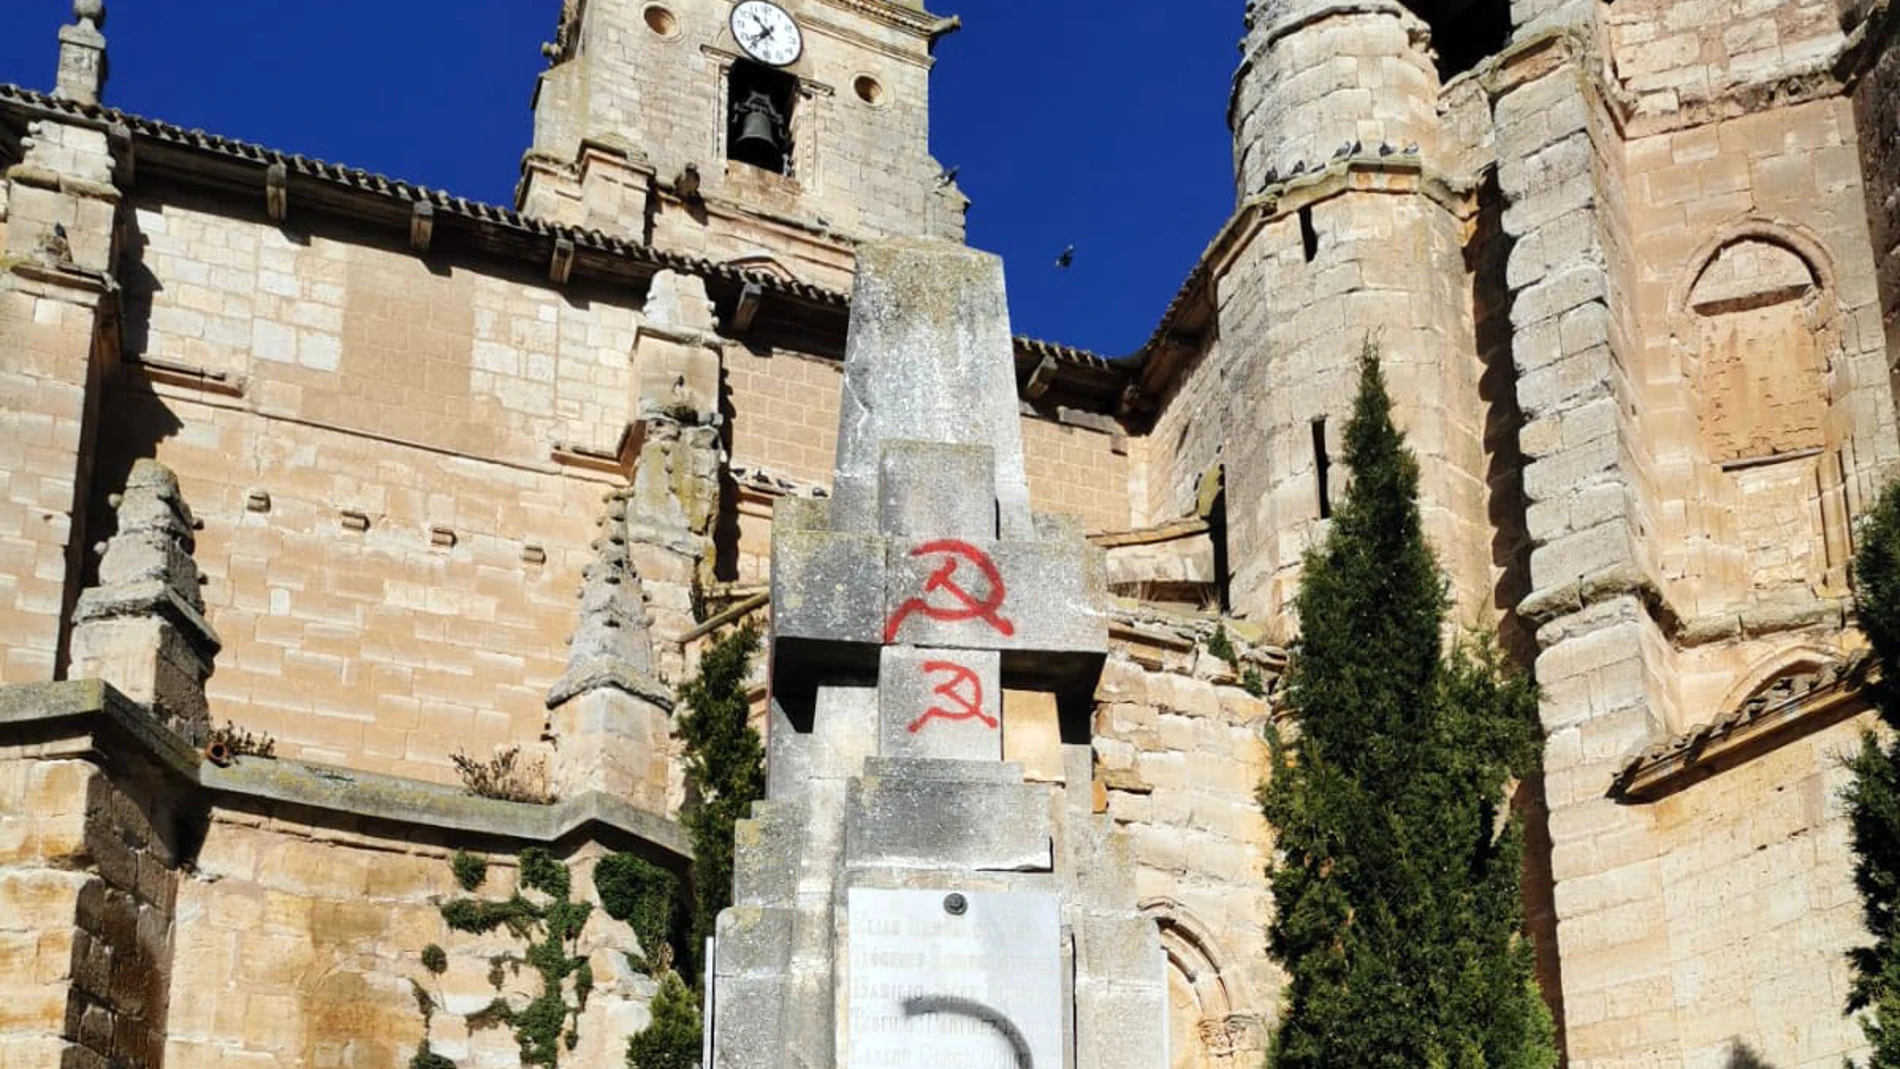 El monumento a los caídos de la iglesia de Santa María la Real de Sasamón (Burgos) amanece con pintadas contra Vox, ensalzando el comunismo y contra el nazismo